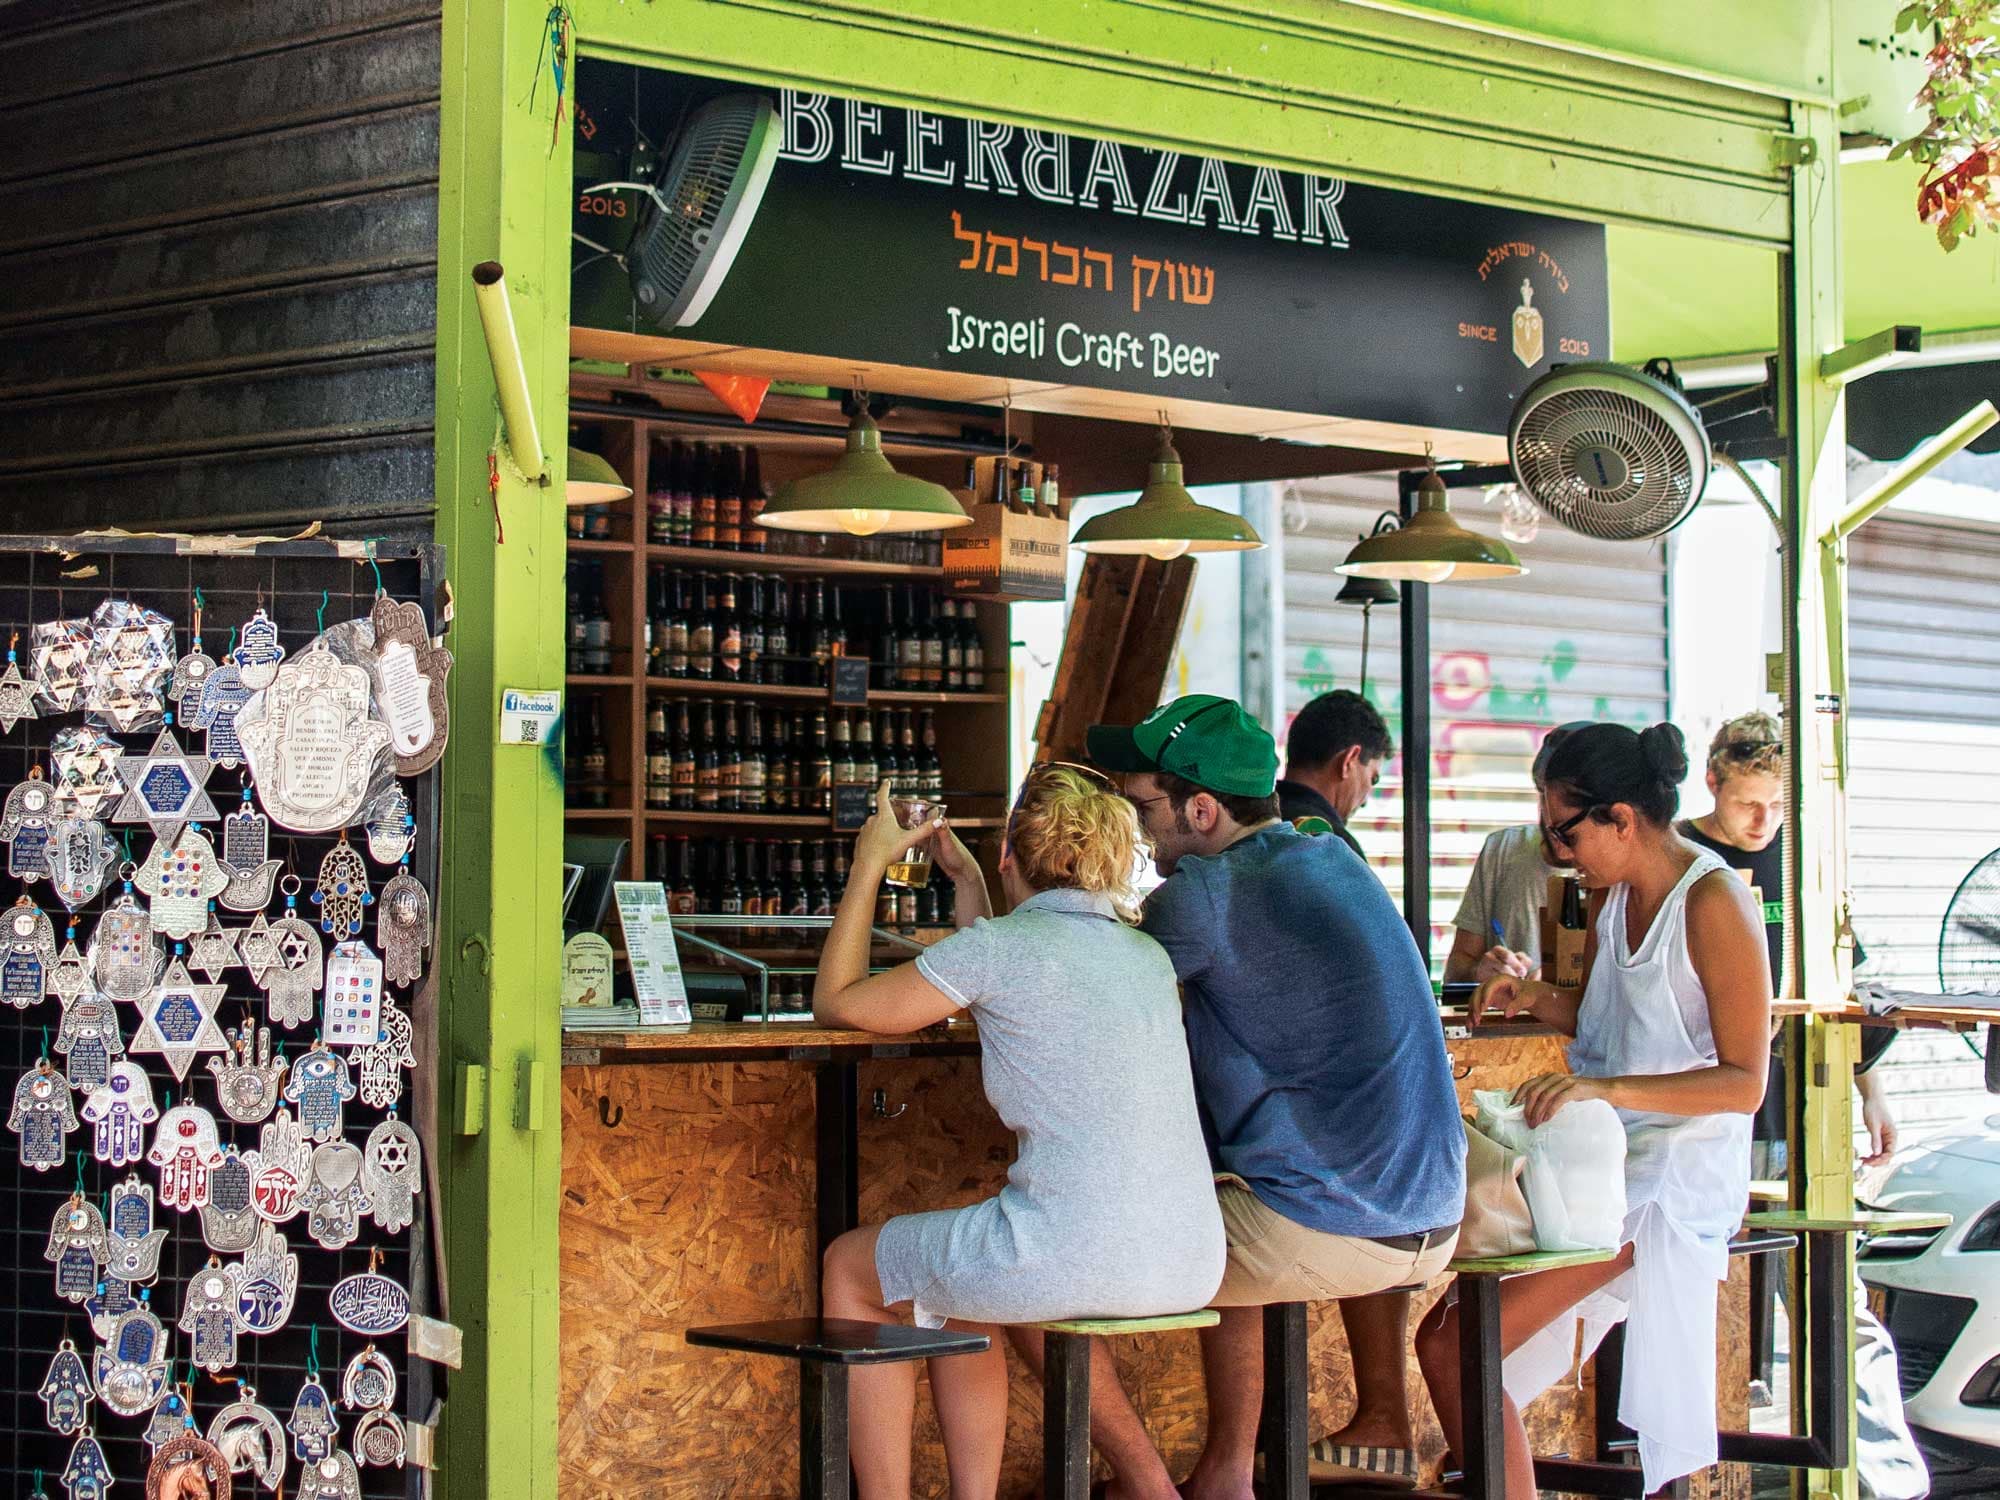 Beer stand at Carmel Market; Tel Aviv, Israel